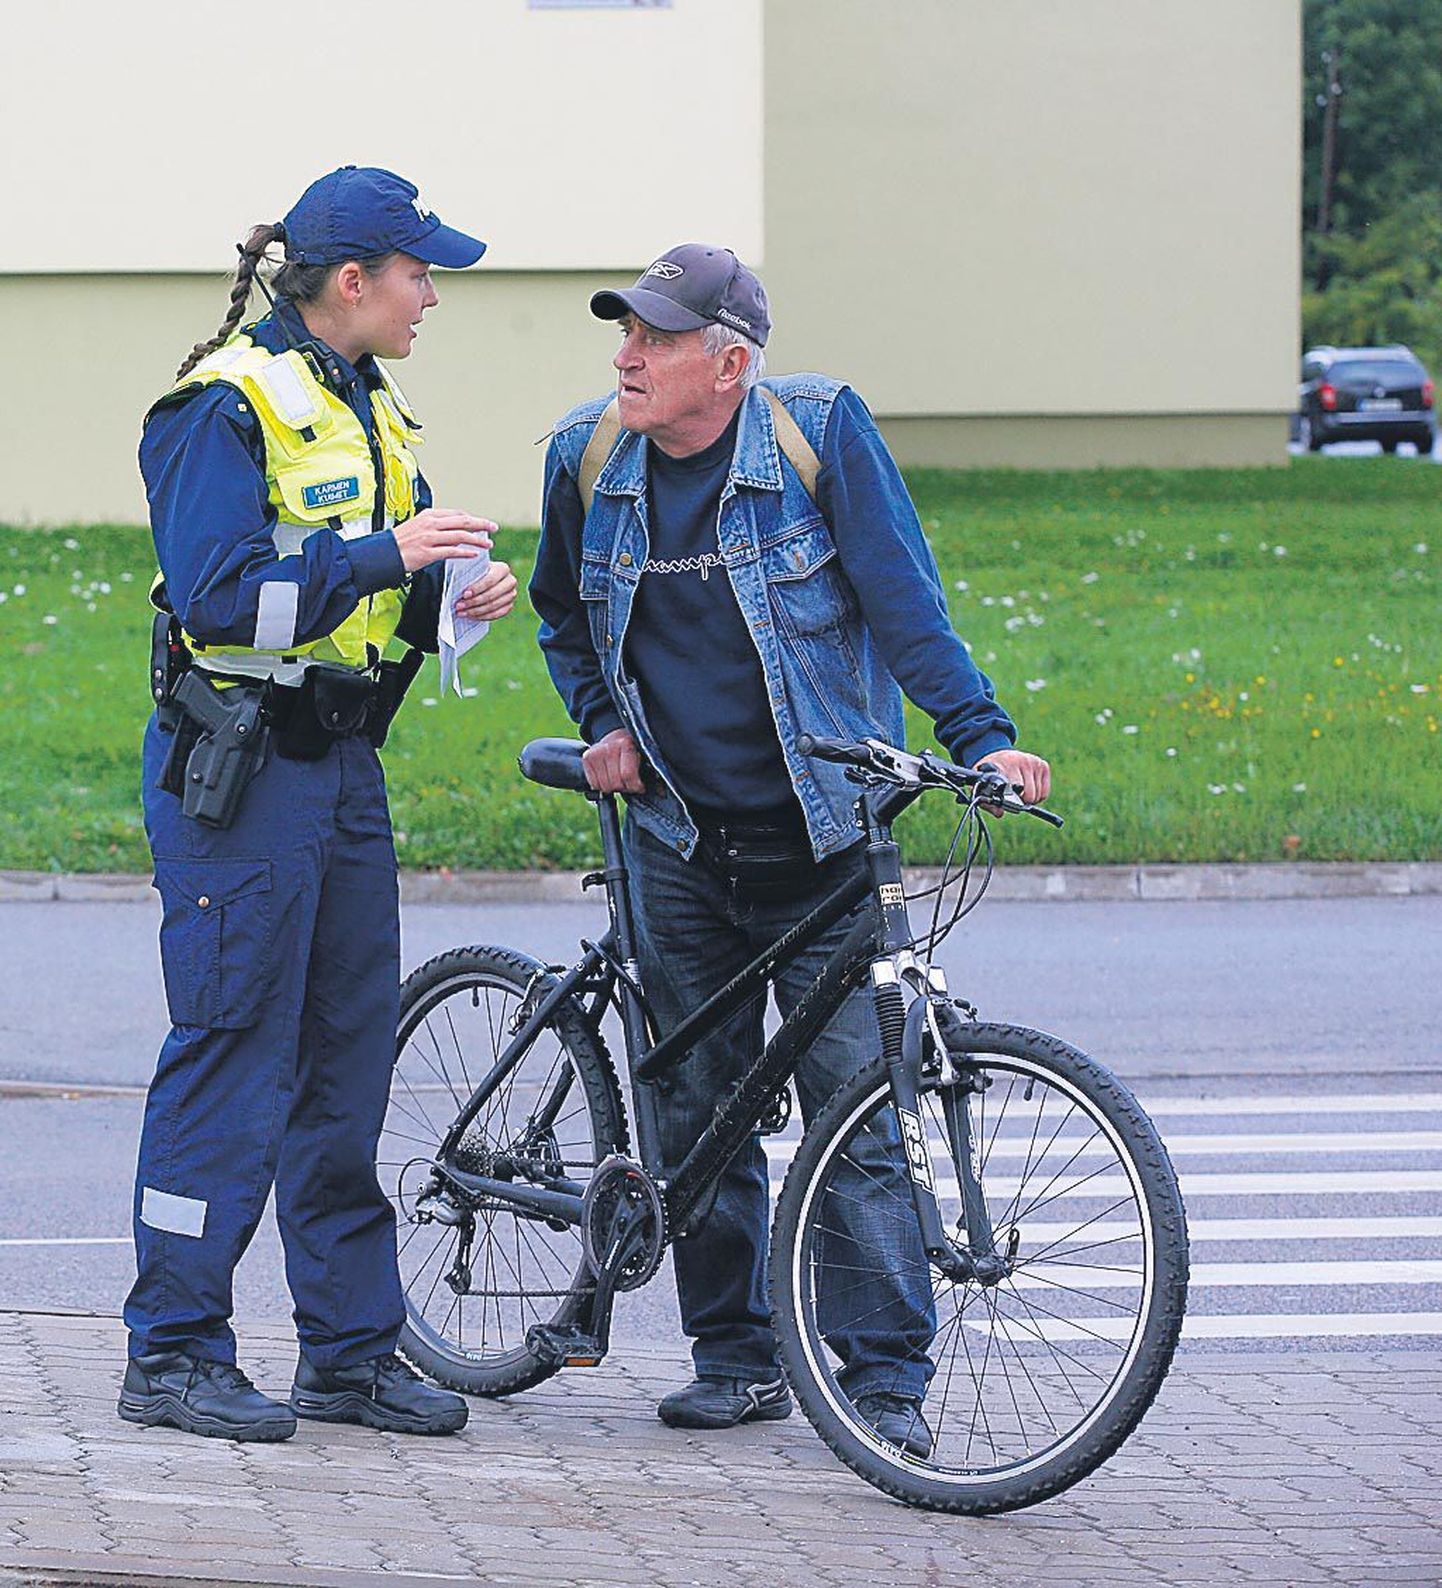 Uue liiklusseaduse kolmel esimesel kuul on kõige rohkem probleeme olnud jalgratturitega ülekäiguradadel.